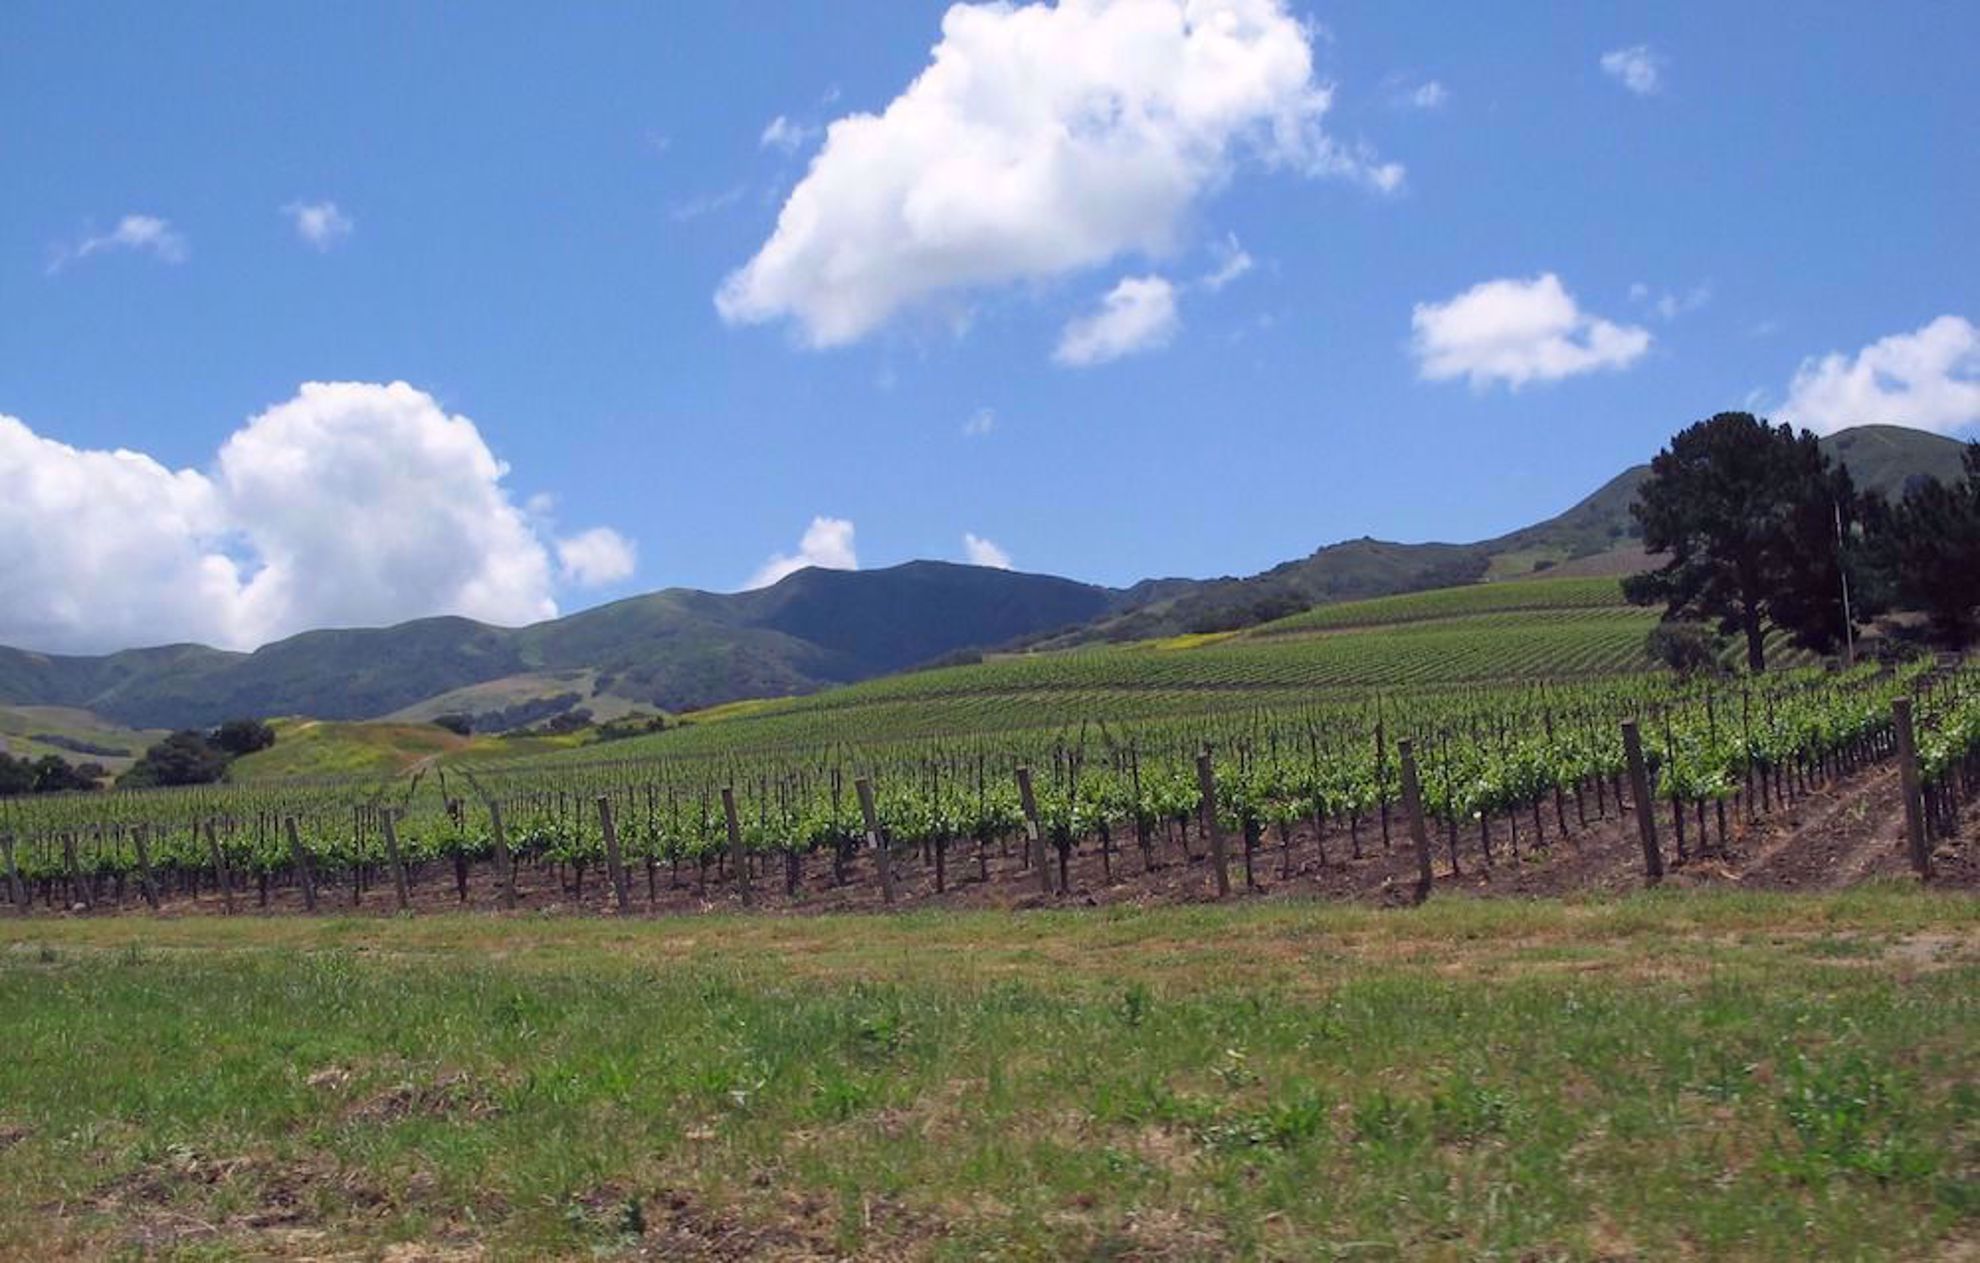 Vineyards near Santa Barbara